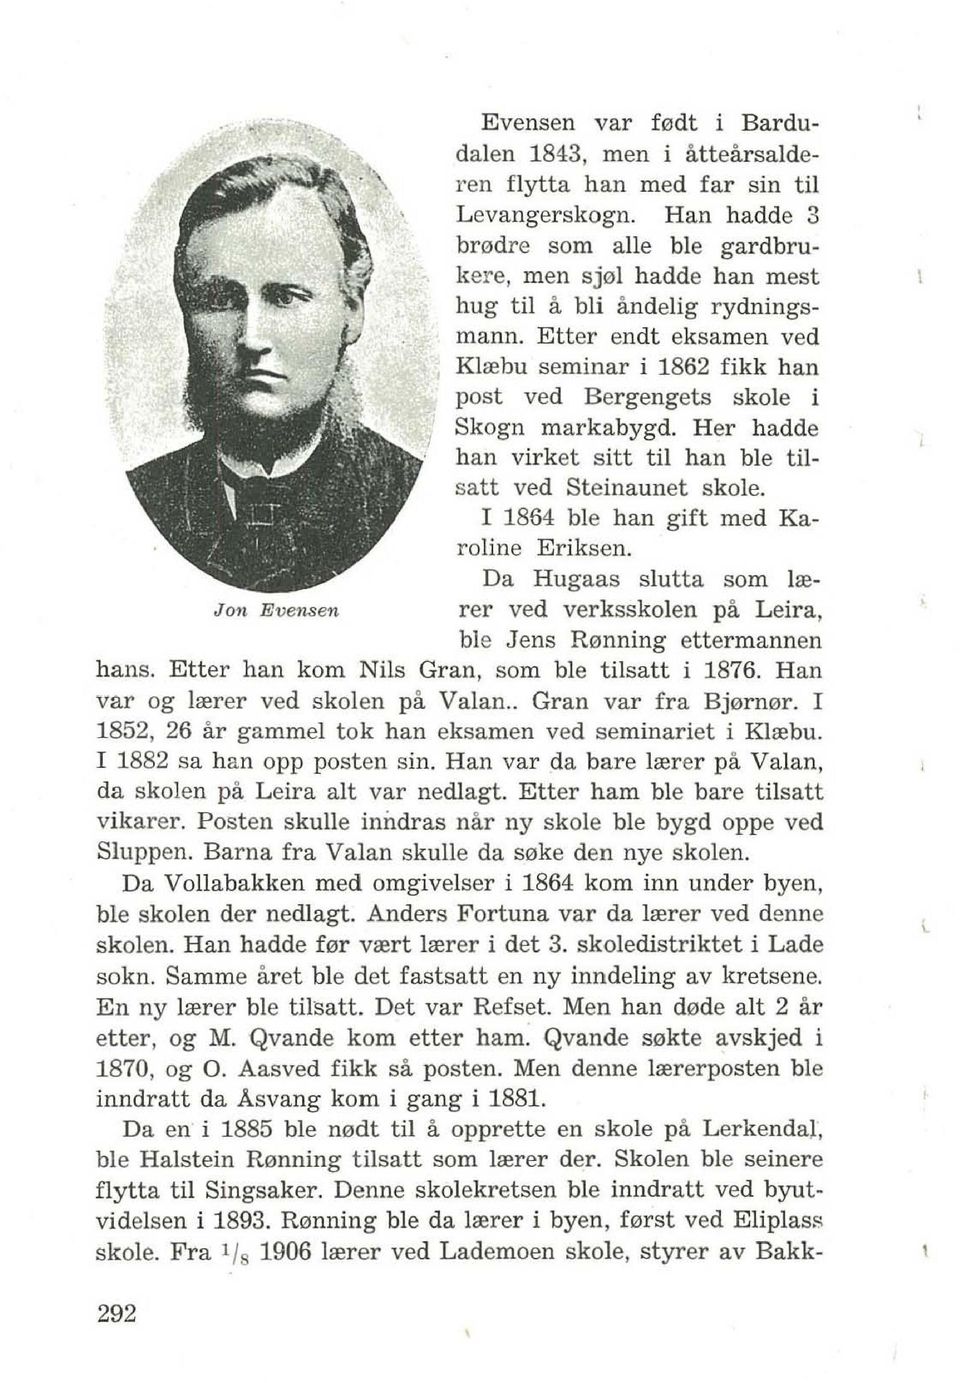 Etter endt eksamen ved Klrebu seminar i 1862 fikk han post ved Bergengets skole i Skogn markabygd. Her hadde han virket sitt til han ble tilsatt ved Steinaunet skole.